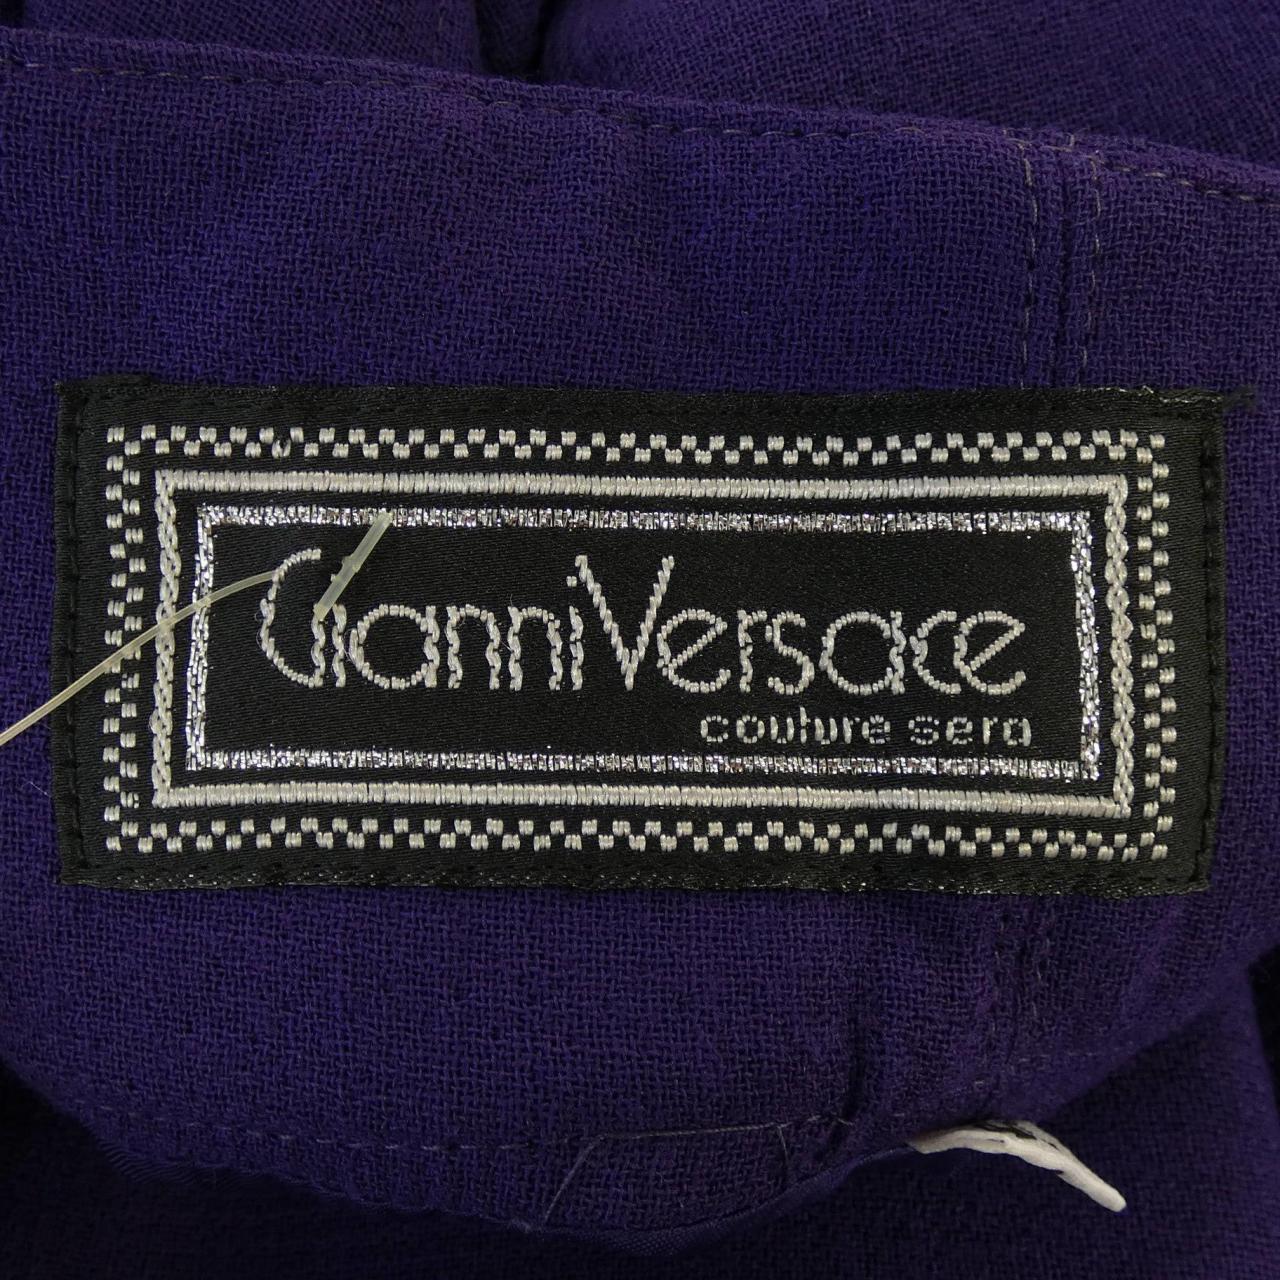 Gianni Versace  VERSACE ワンピースどうぞ宜しくお願いいたします